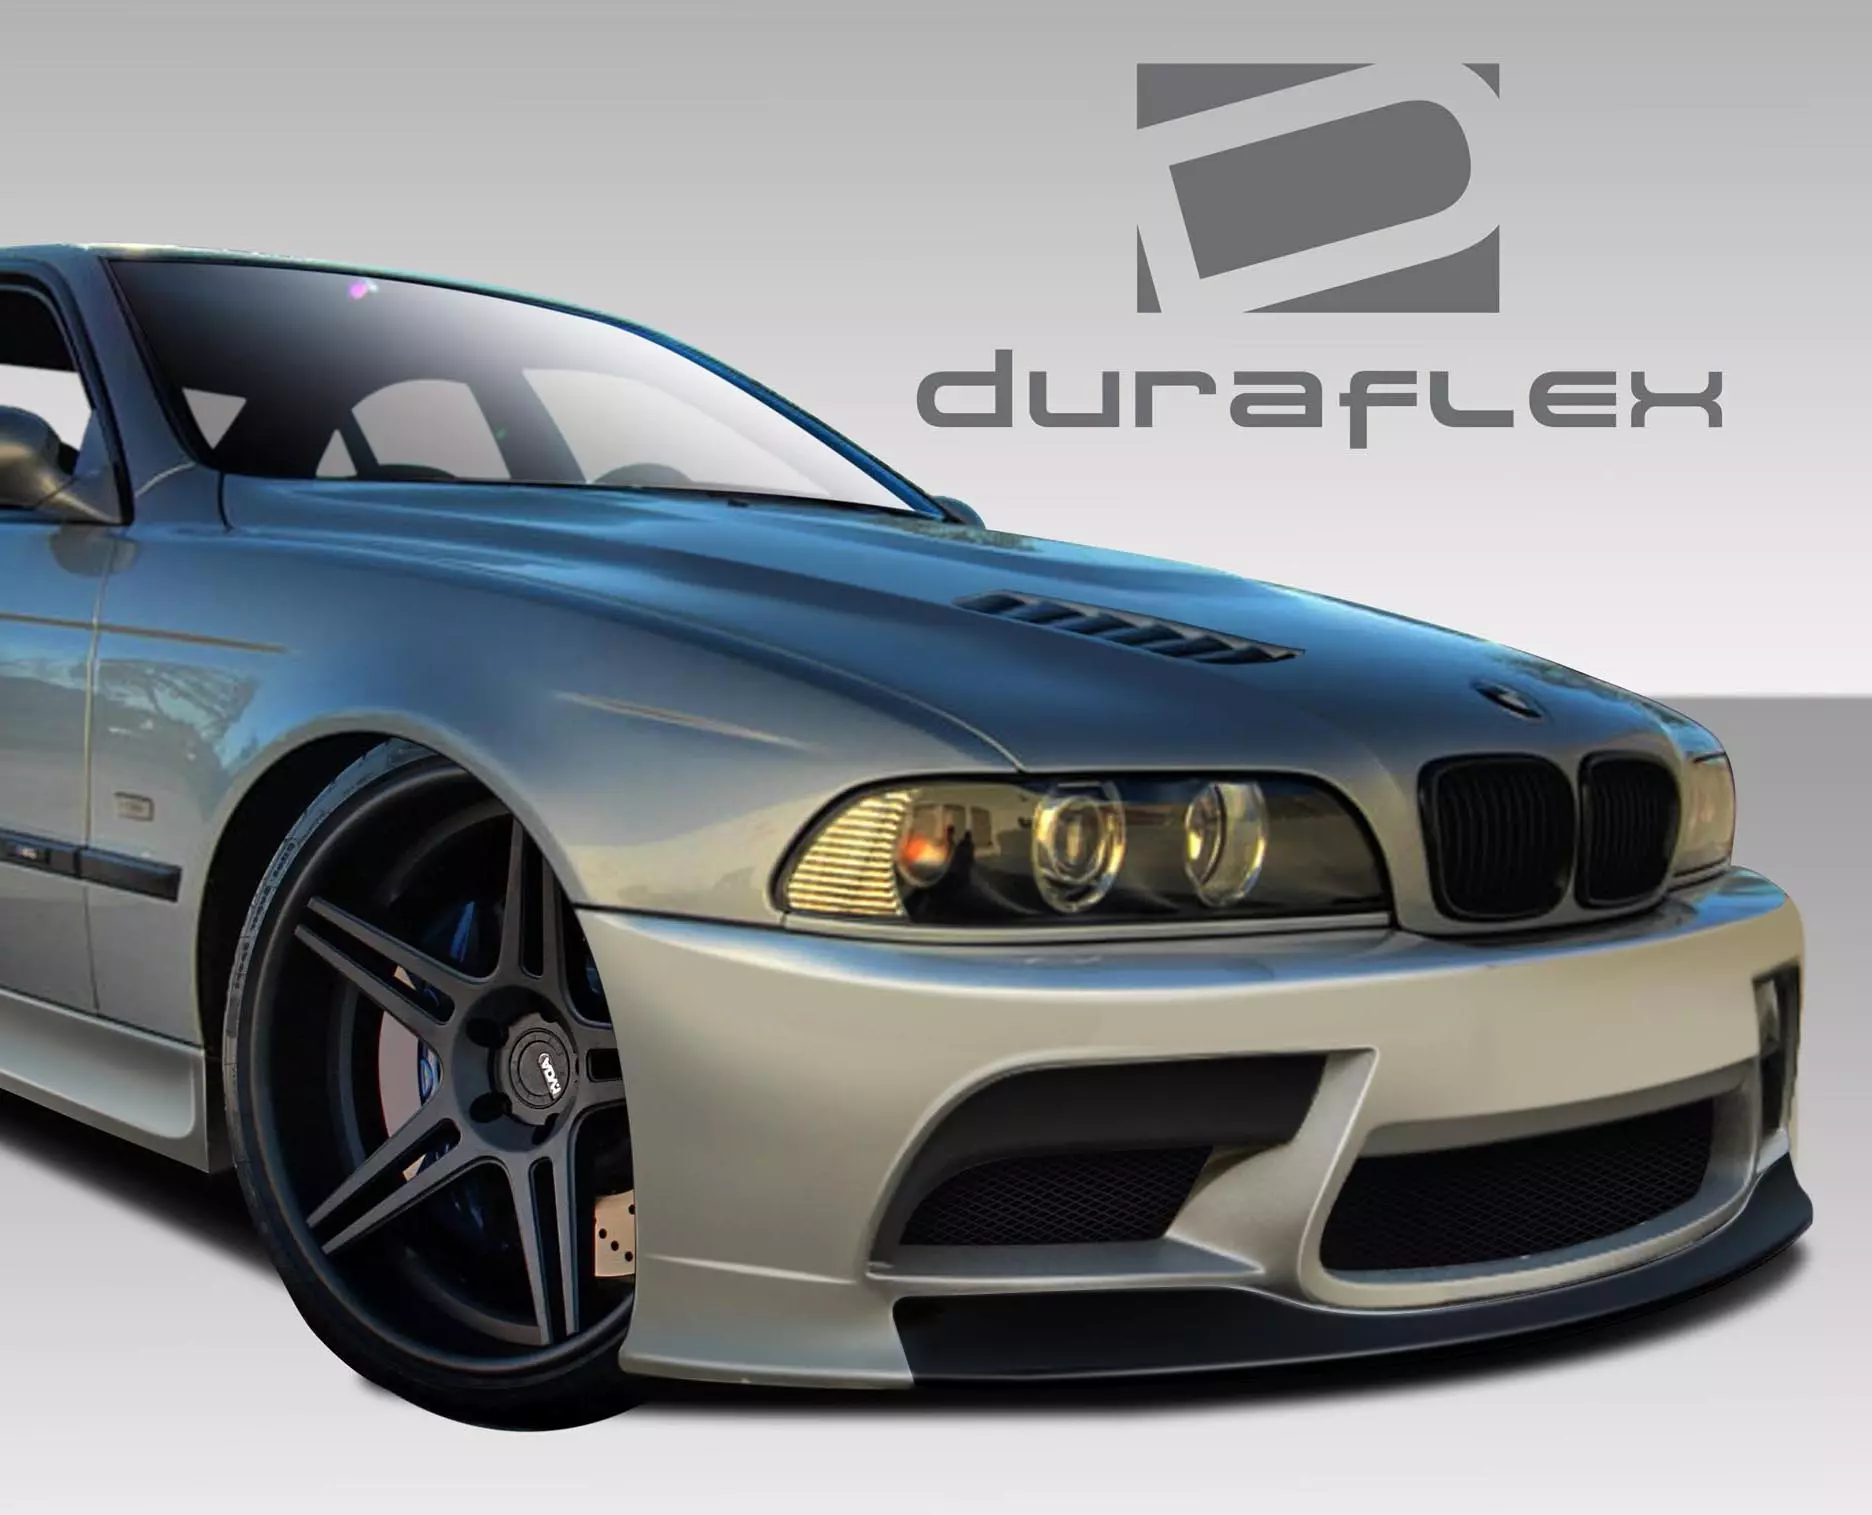 1997-2003 BMW 5 Series M5 E39 4DR Duraflex GT-S Front Bumper Cover 1 Piece - Image 2